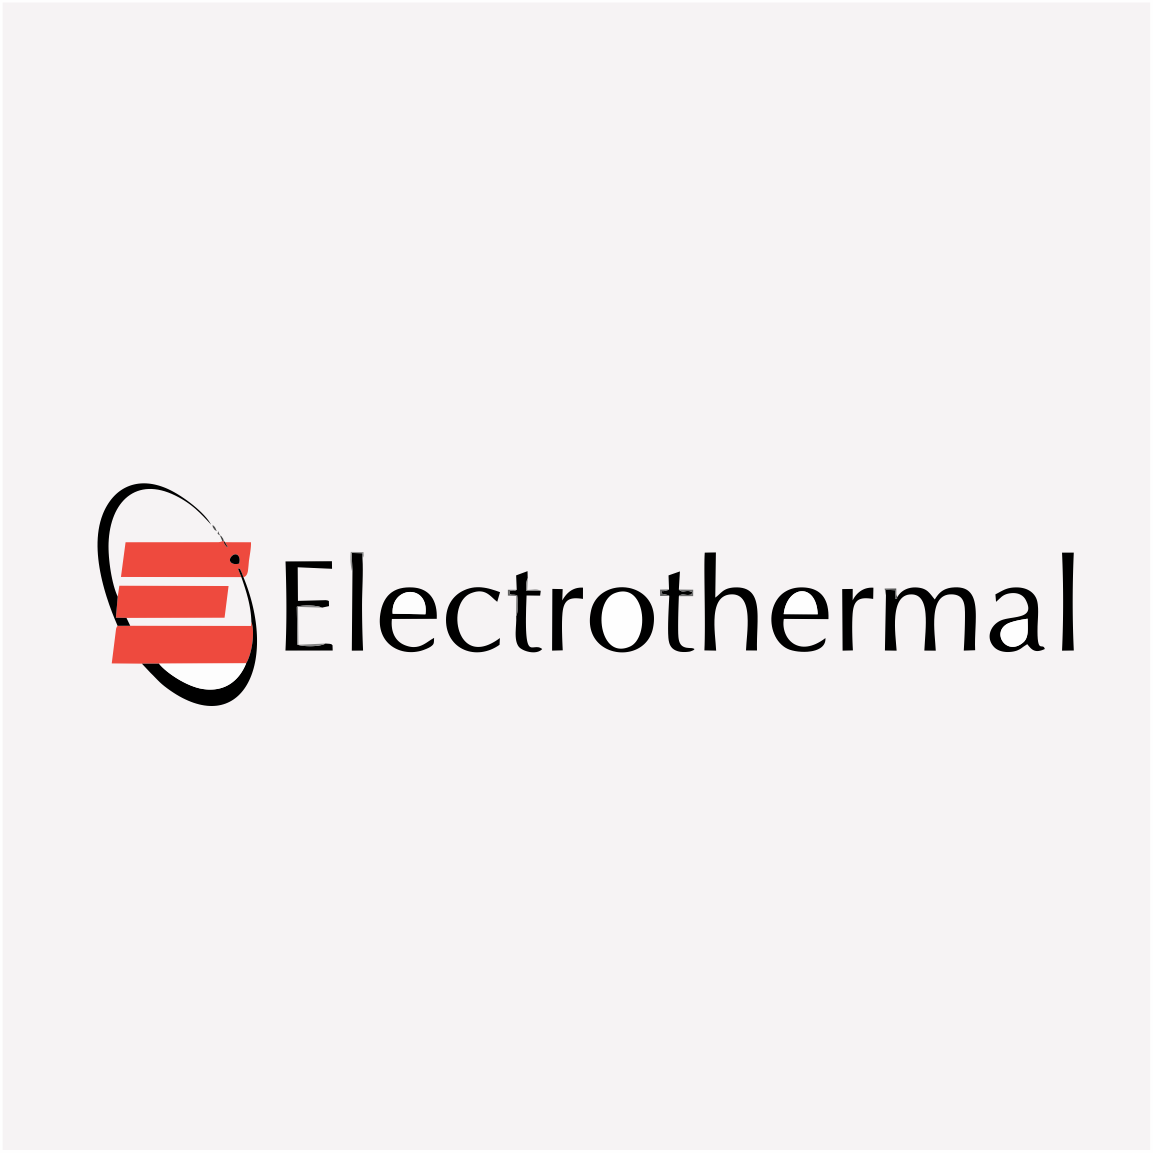 electrothermal_logo